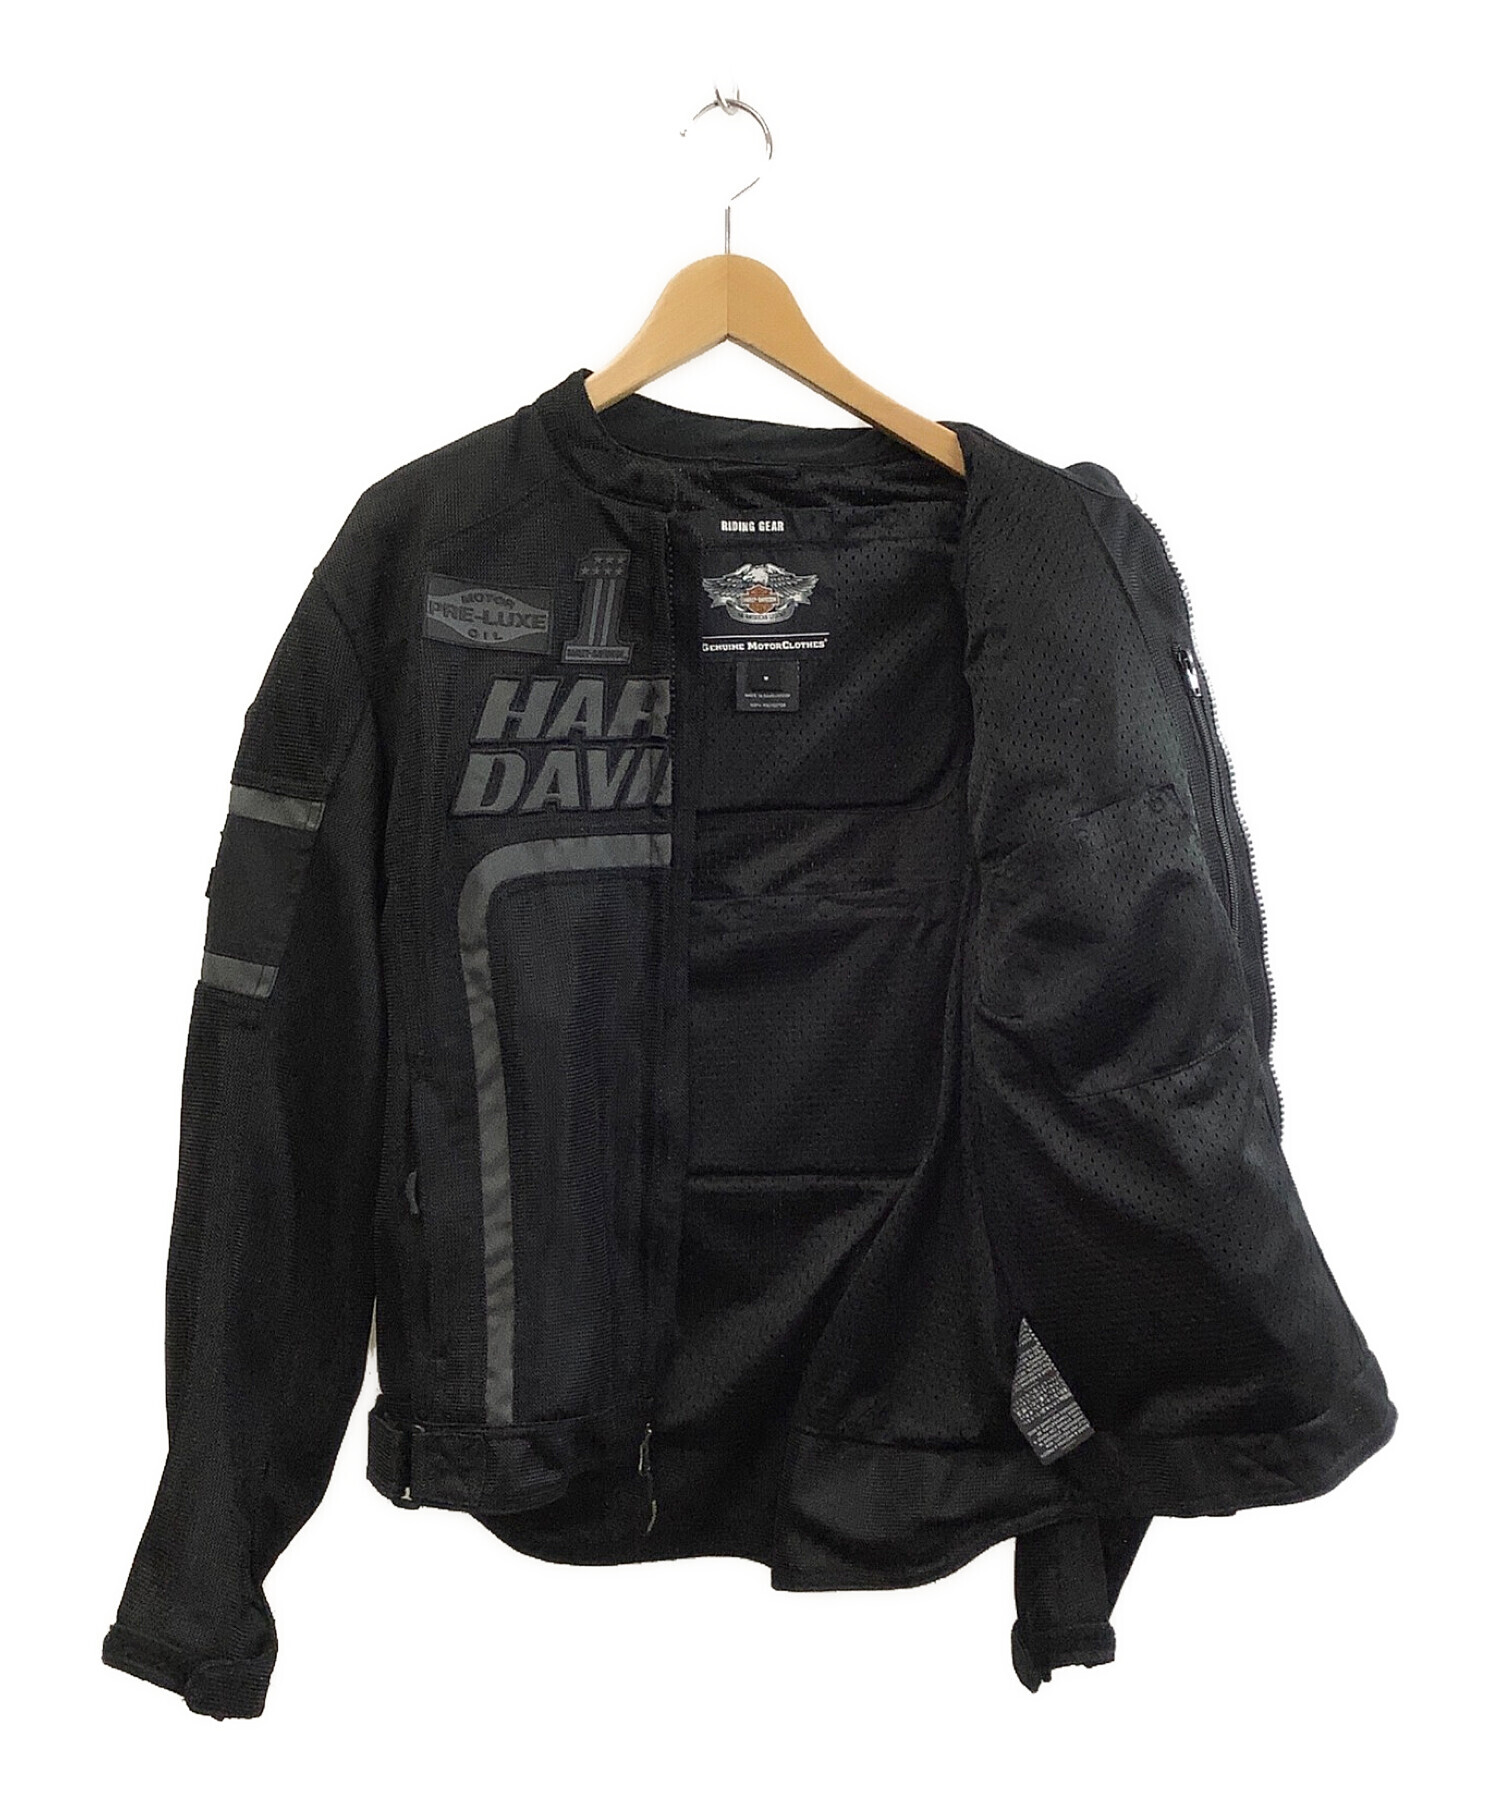 HARLEY-DAVIDSON (ハーレーダビットソン) ナイロンメッシュジャケット ブラック サイズ:M